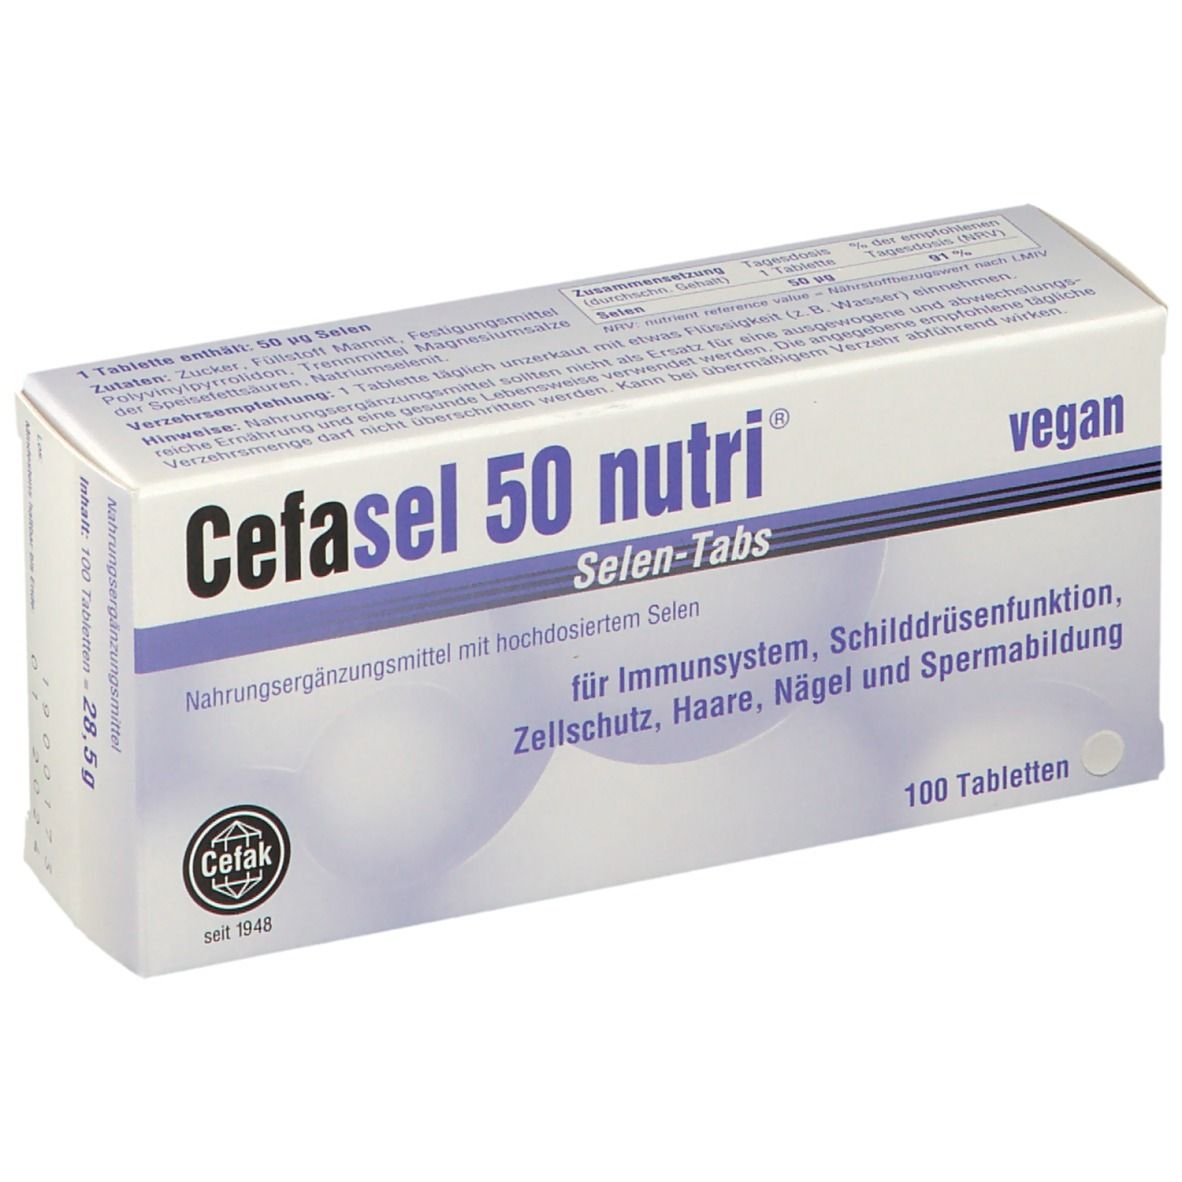 Cefasel 50 nutri® Selen-Tabs